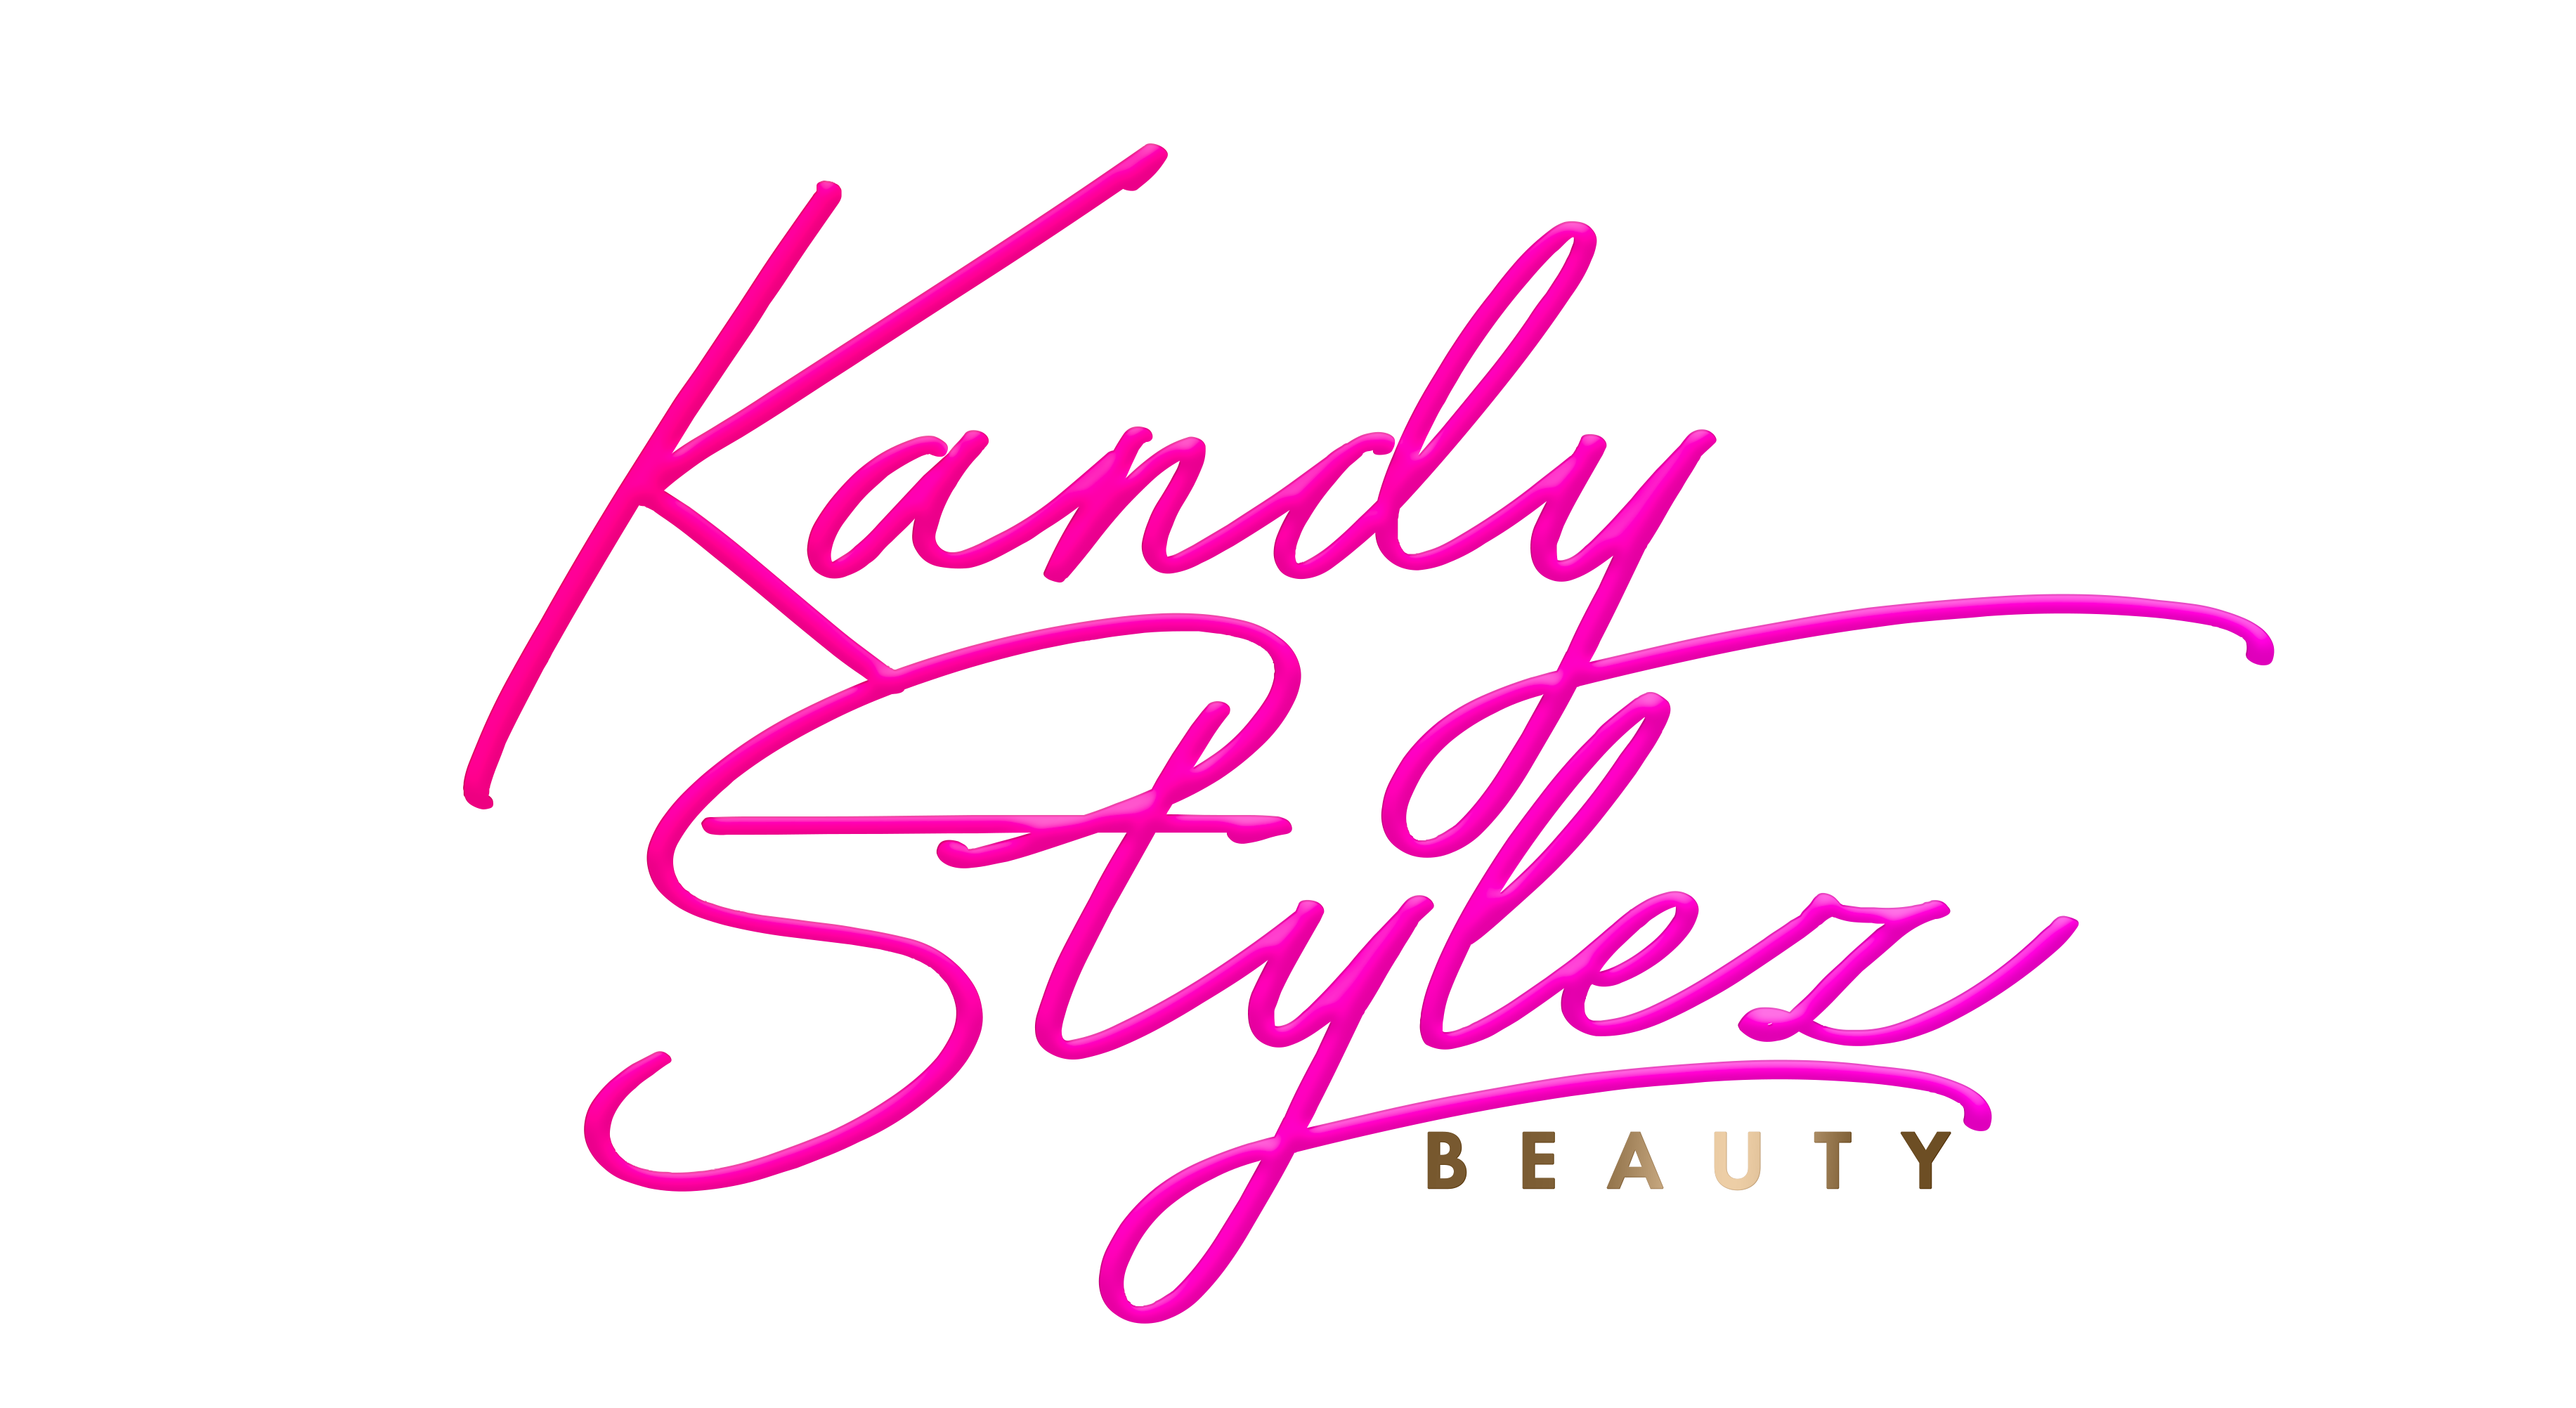 Kandy Stylez Beauty